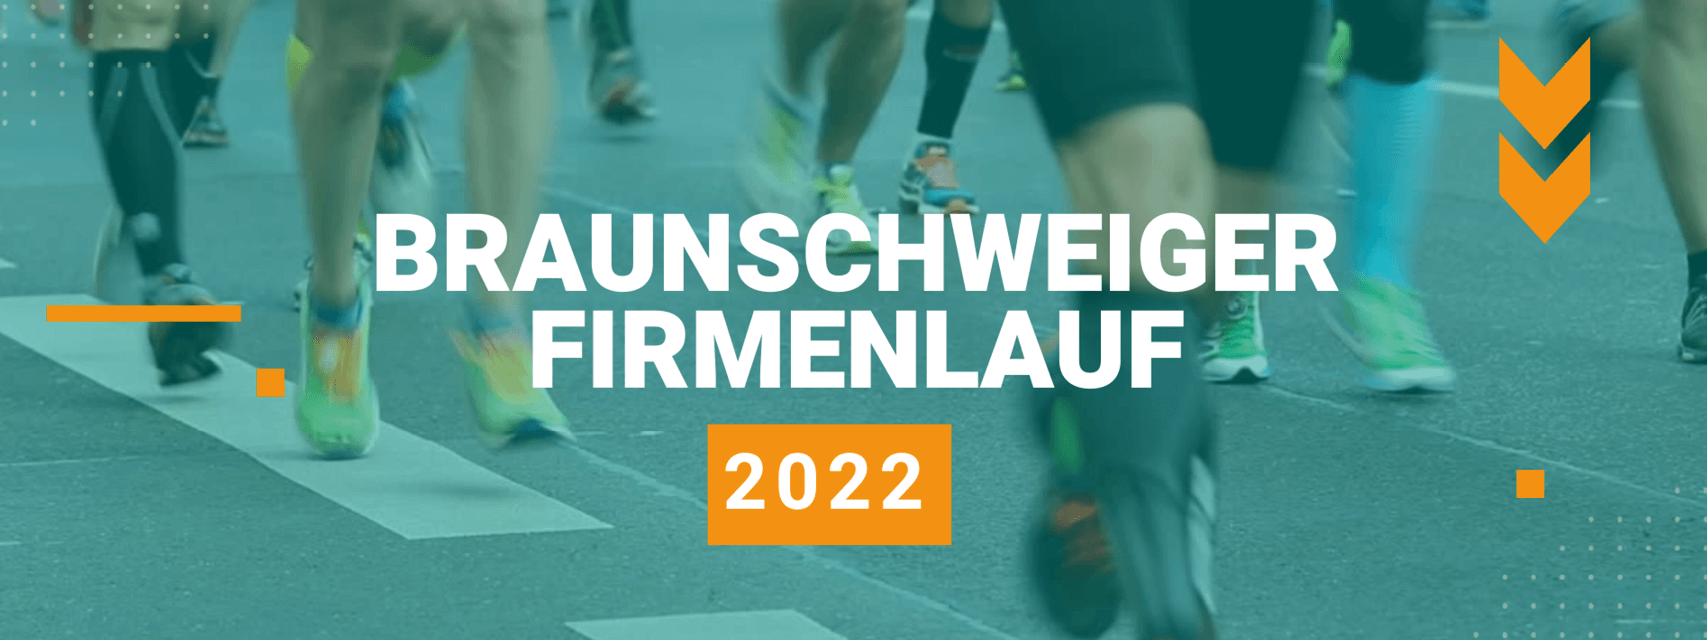 Header für den Braunschweiger Firmenlauf 2022